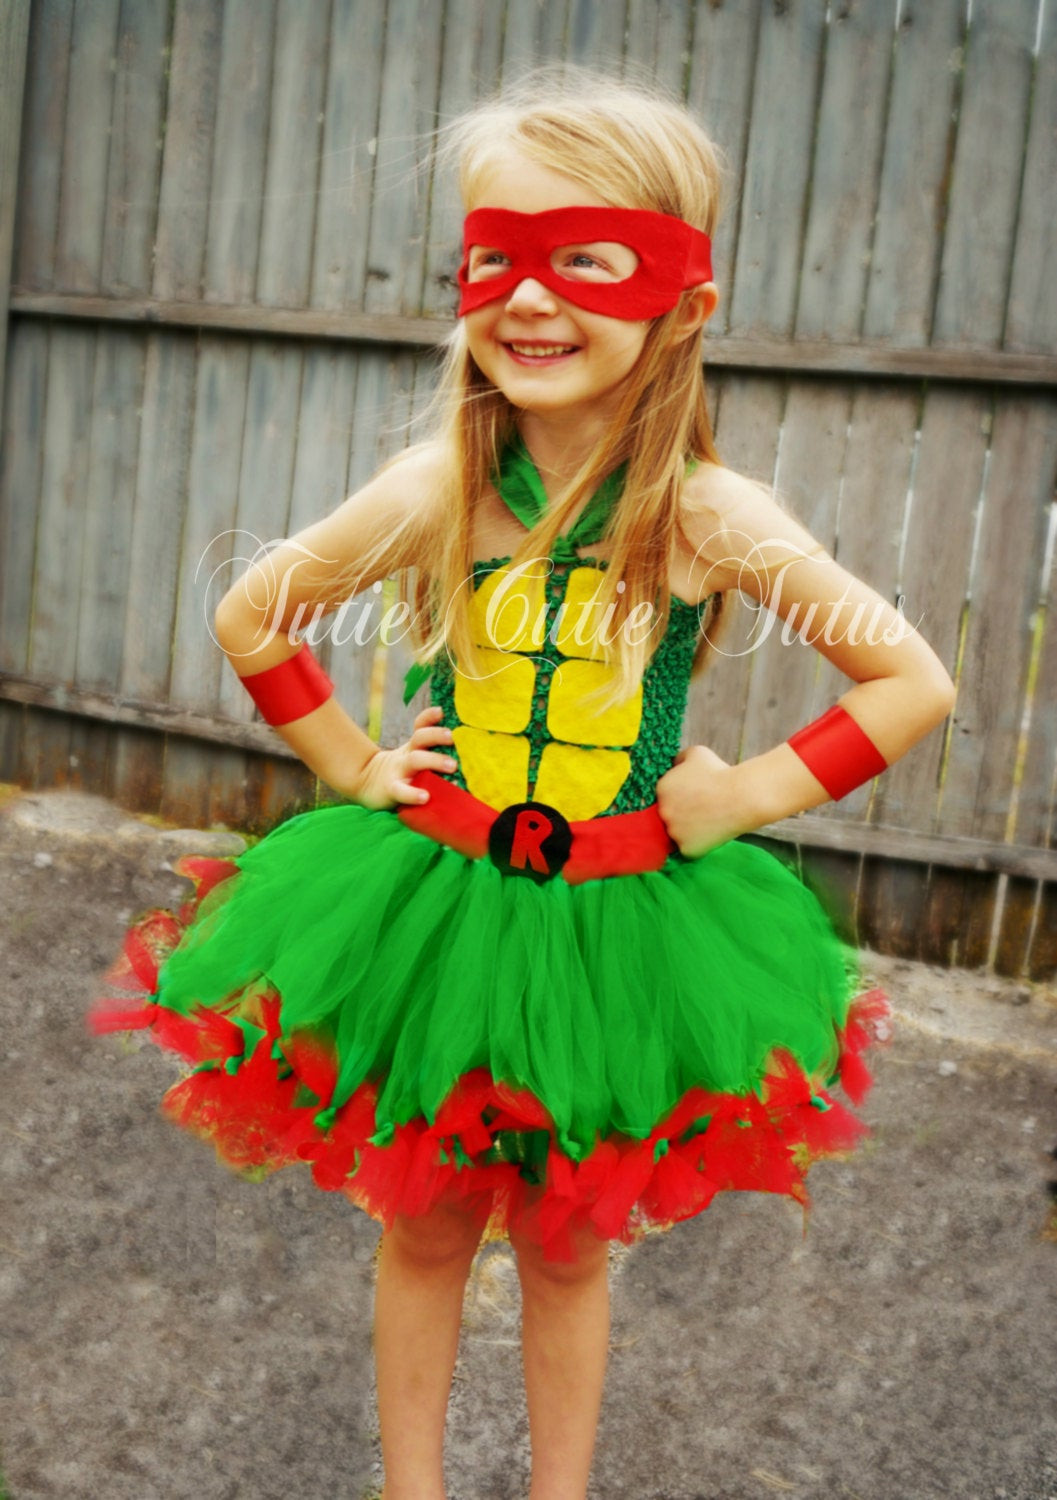 Best ideas about DIY Ninja Turtle Costume With Tutu
. Save or Pin Teenage Mutant Ninja Turtle Tutu Dress Costume Now.